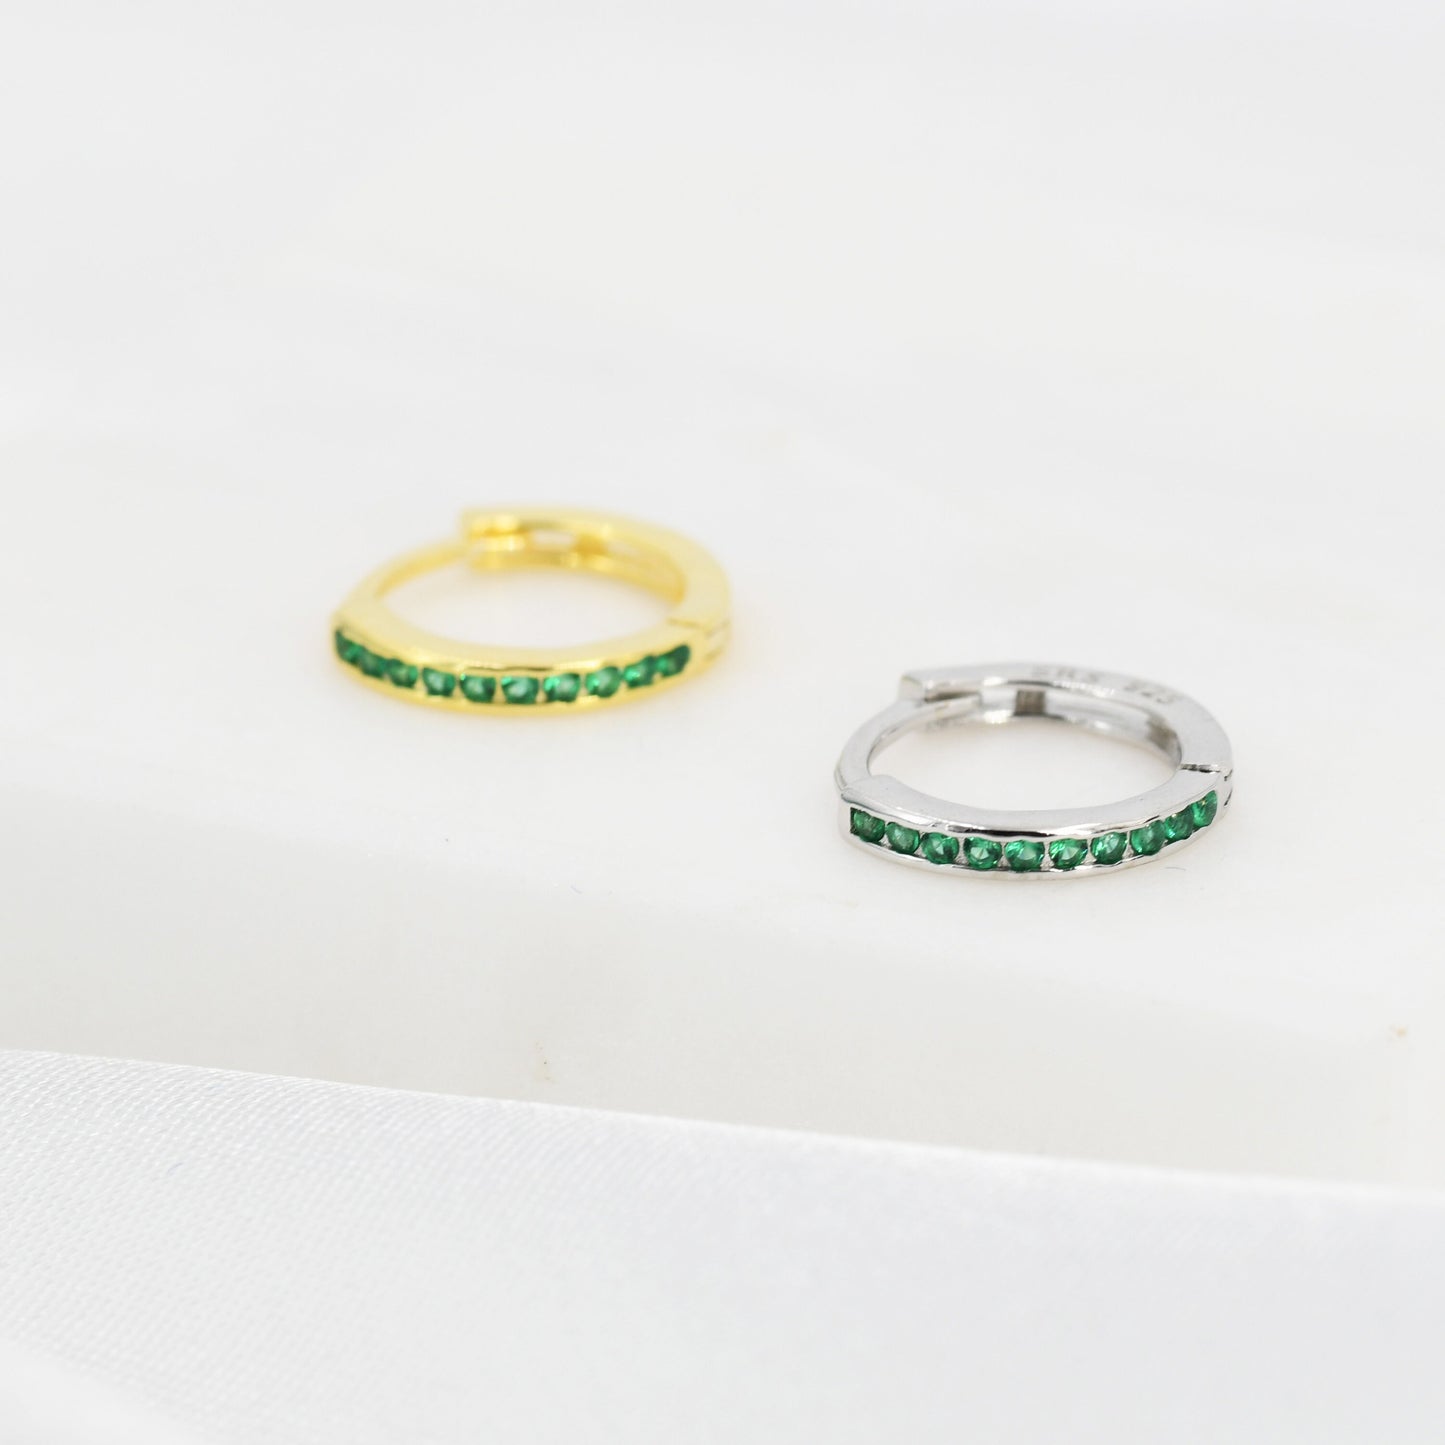 Extra Skinny Emerald Green CZ Huggie Hoop in Sterling Silver, Silver or Gold,  8mm Inner Diameter Hoop Earrings, May Birthstone